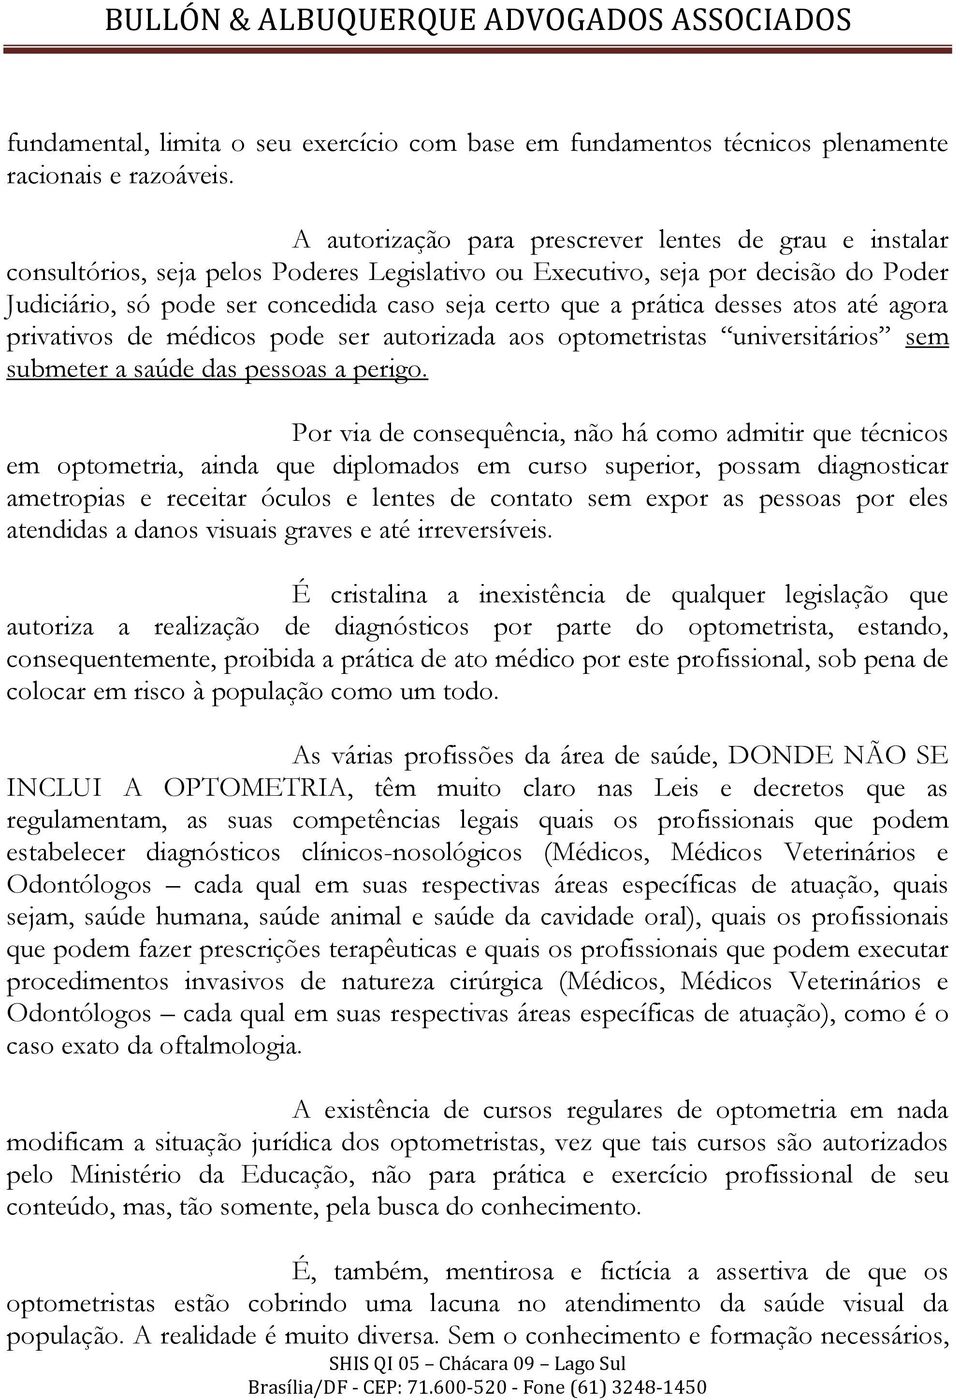 BULLÓN & ALBUQUERQUE ADVOGADOS ASSOCIADOS - PDF Download grátis